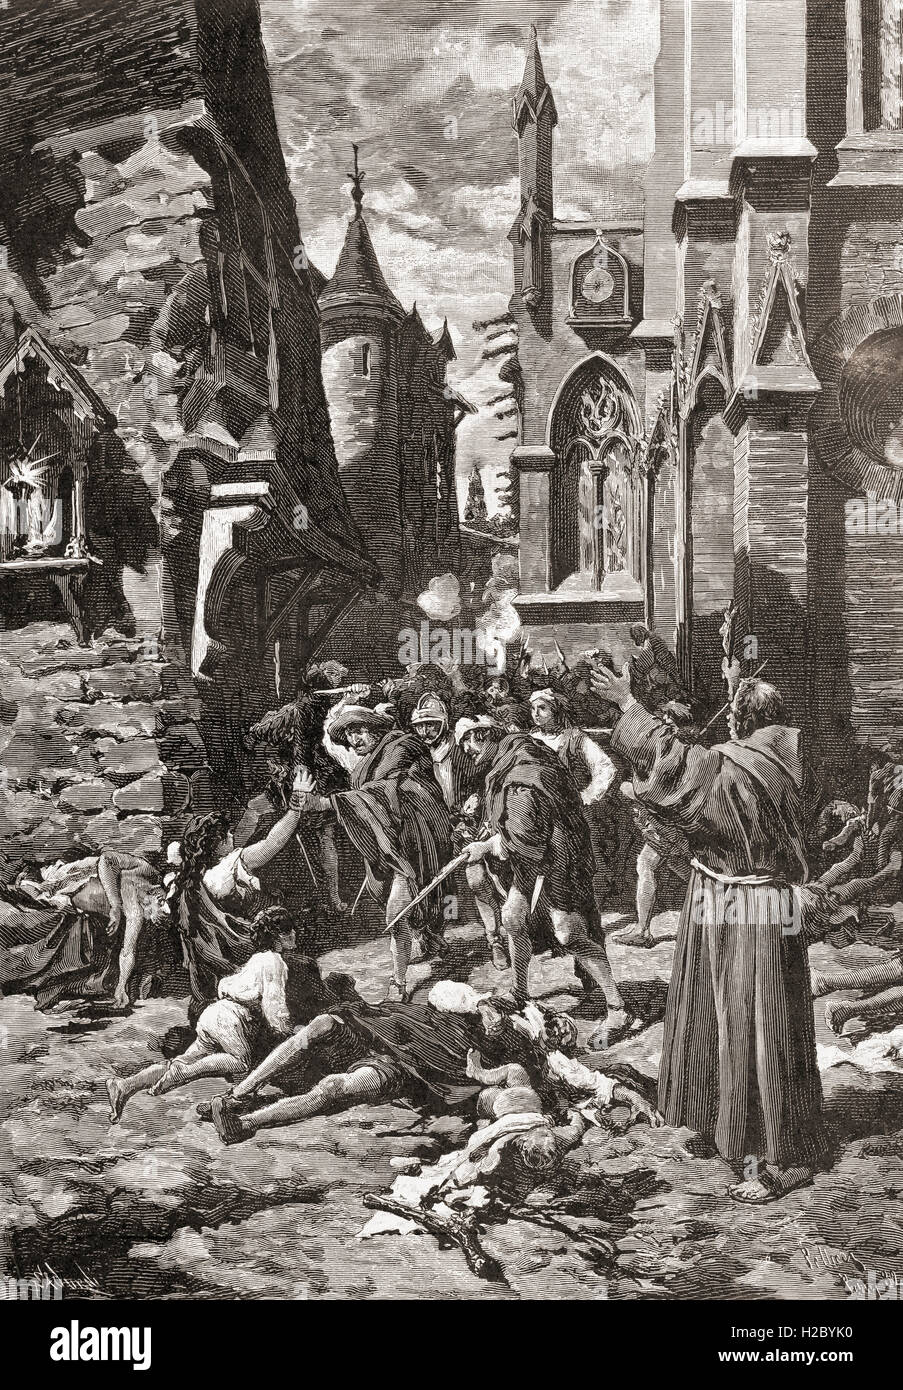 Die St.-Bartholomäus Tag in Paris, Frankreich im Jahre 1572 eine Zielgruppe der Morde und eine Welle von katholischen Mob Gewalt, gegen die Hugenotten (französische calvinistischen Protestanten) während der französischen Religionskriege Massaker. Stockfoto